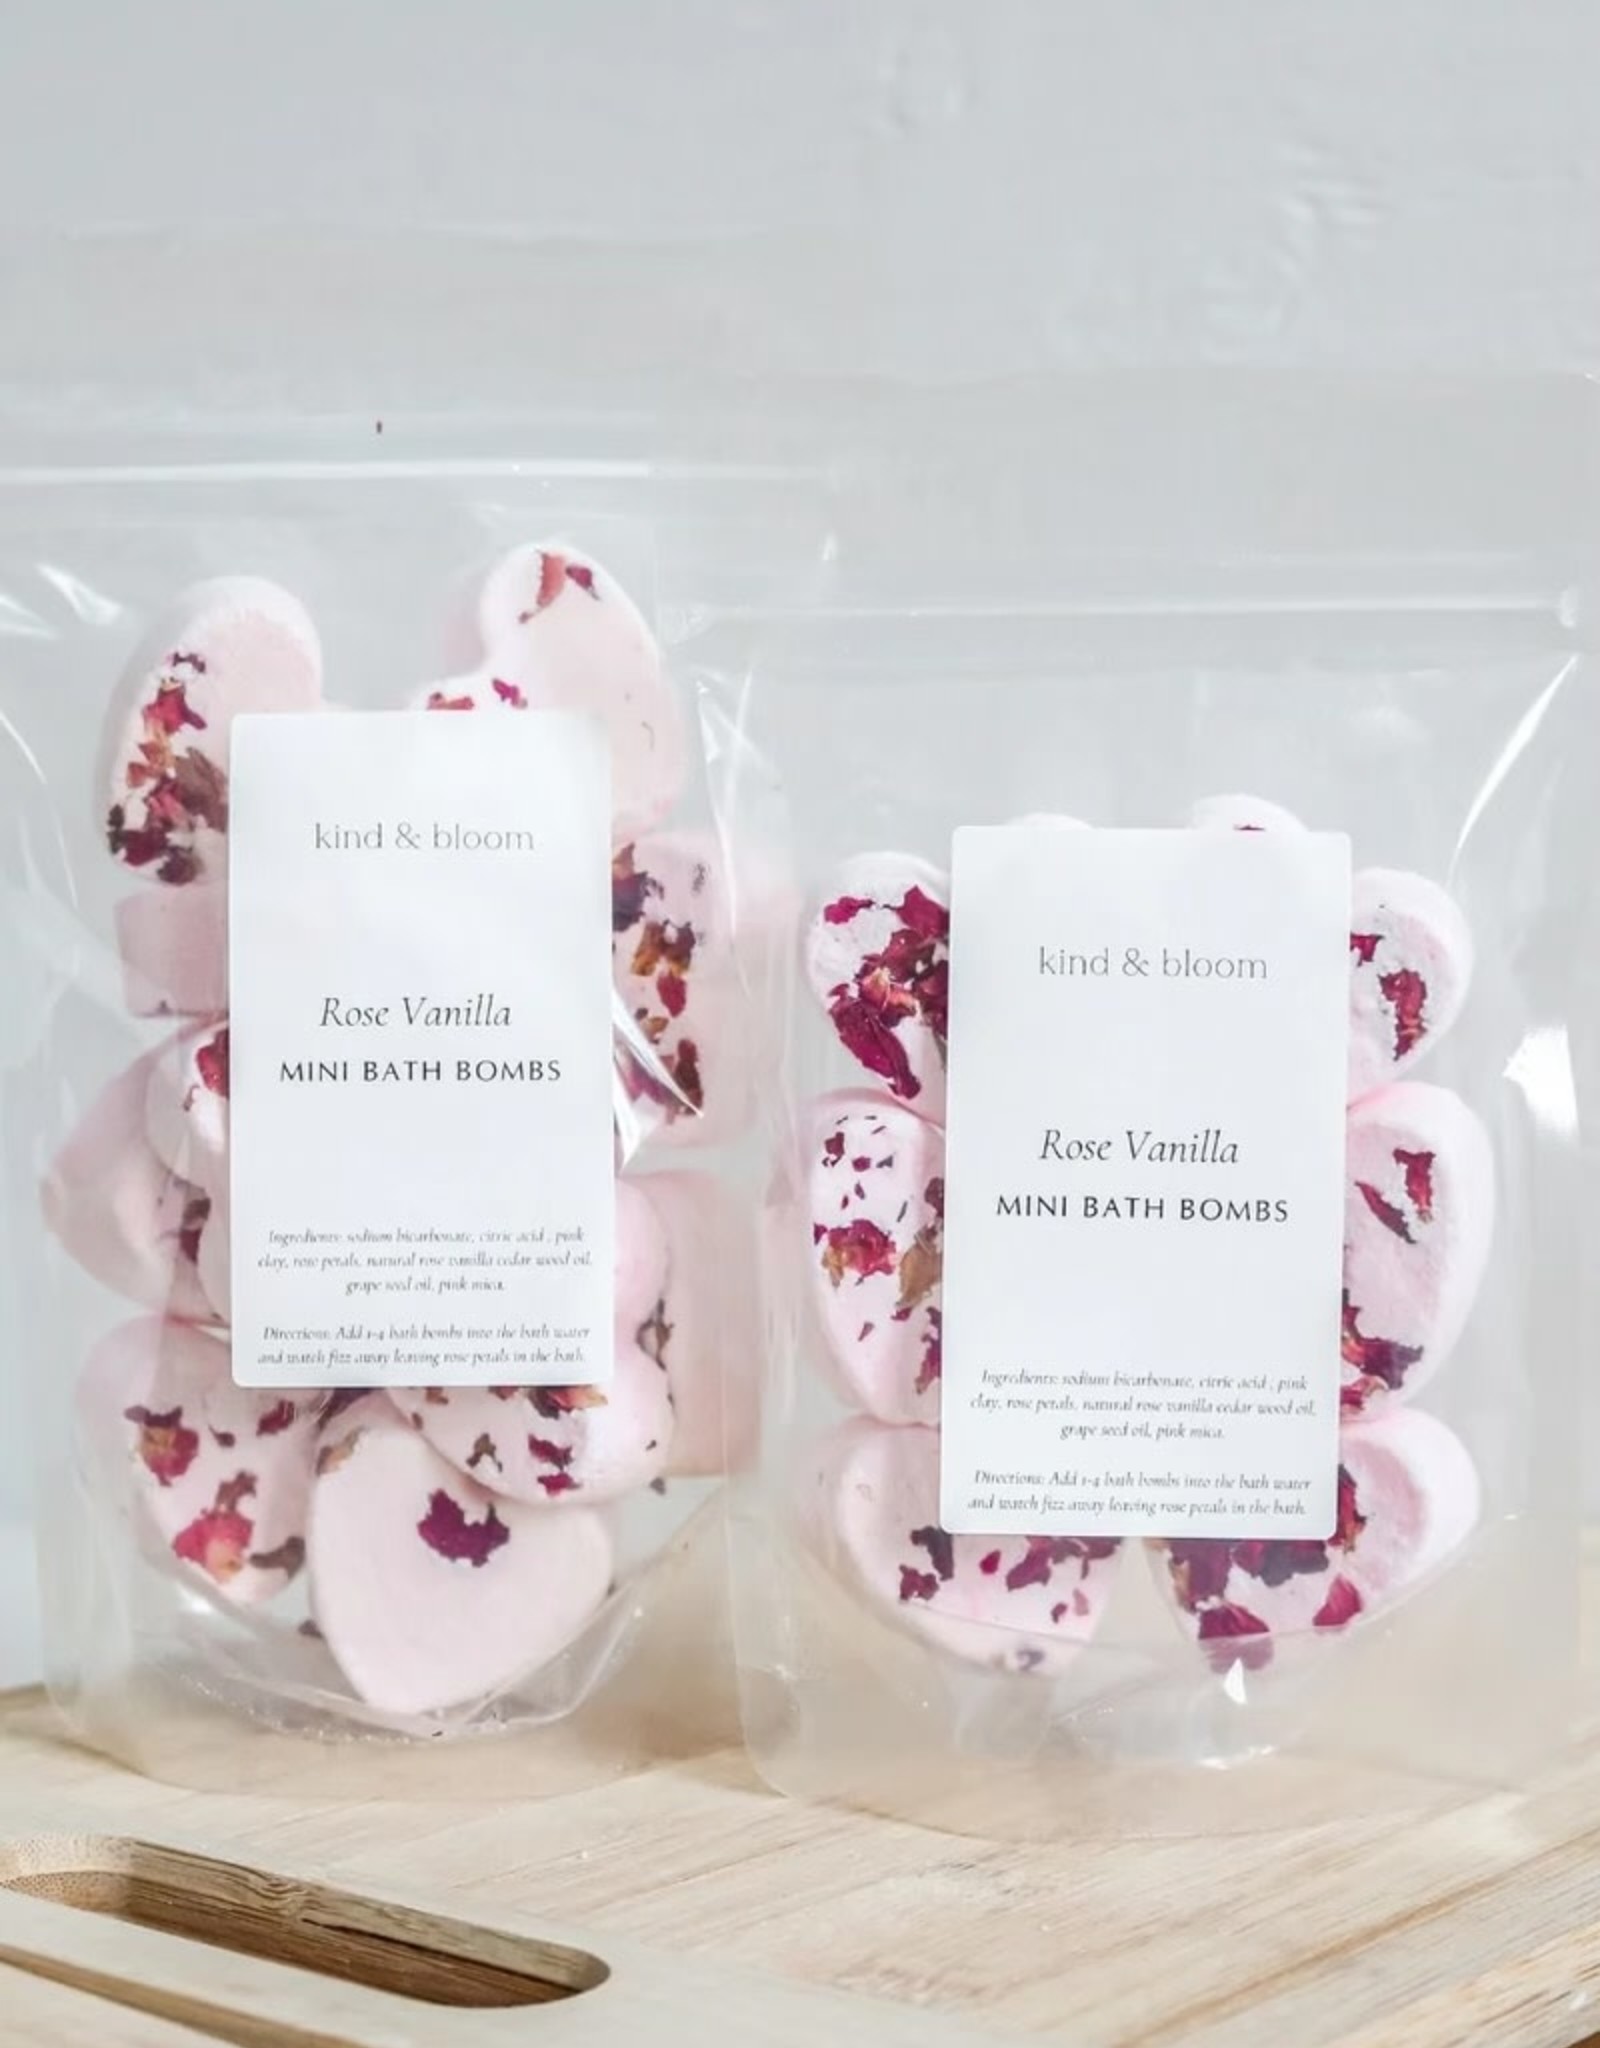 Kind & Bloom Kind & bloom, mini bath bombs Rose Vanilla